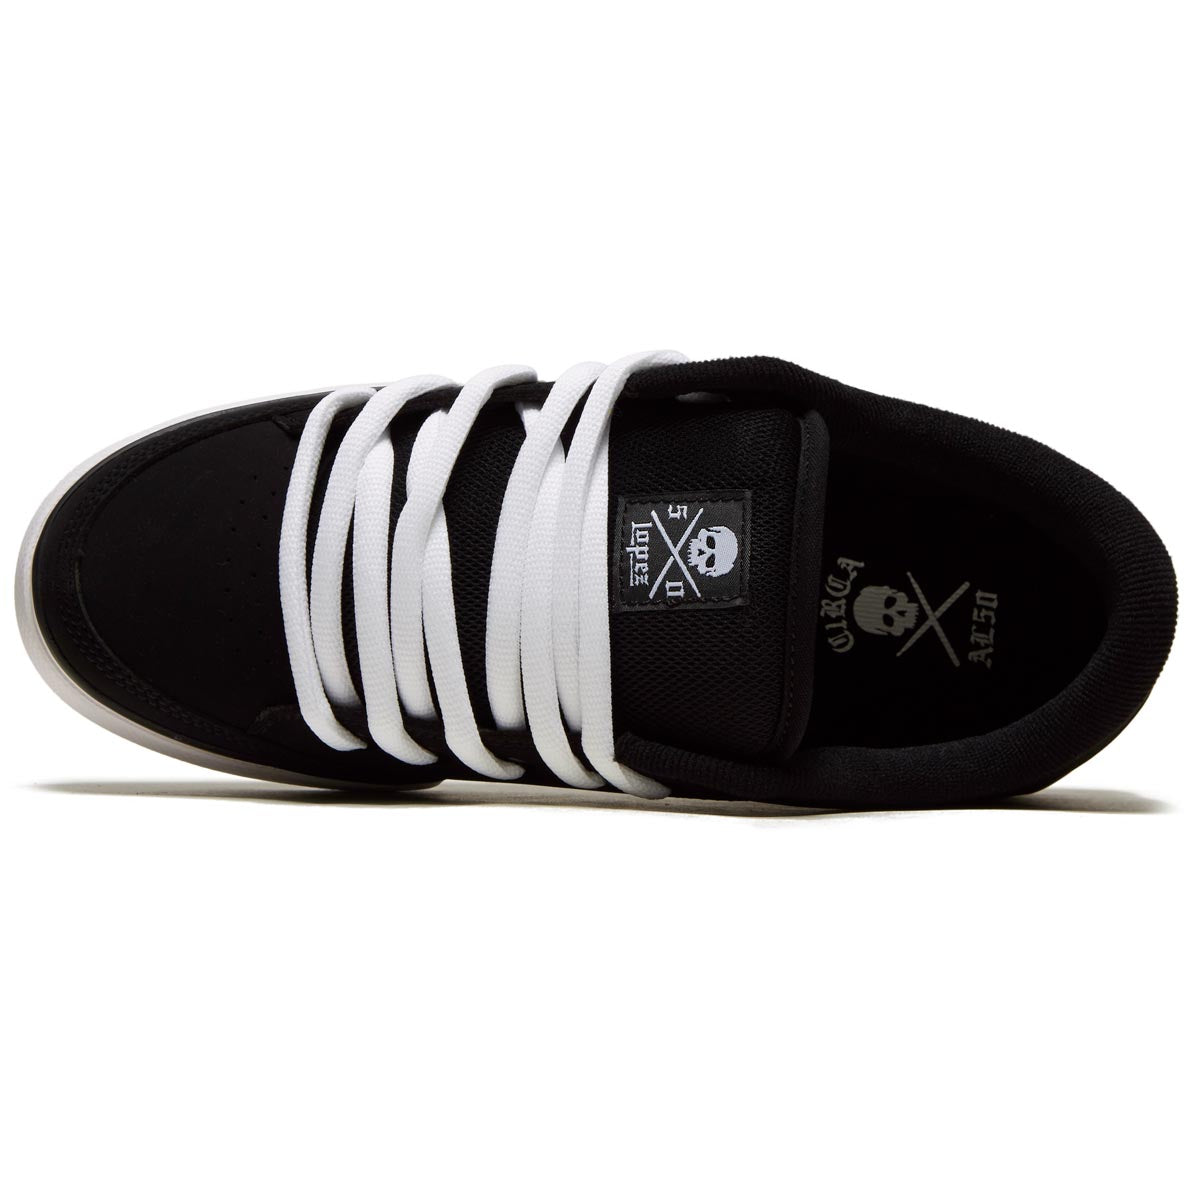 C1rca AL 50 Shoes - Black/White image 3